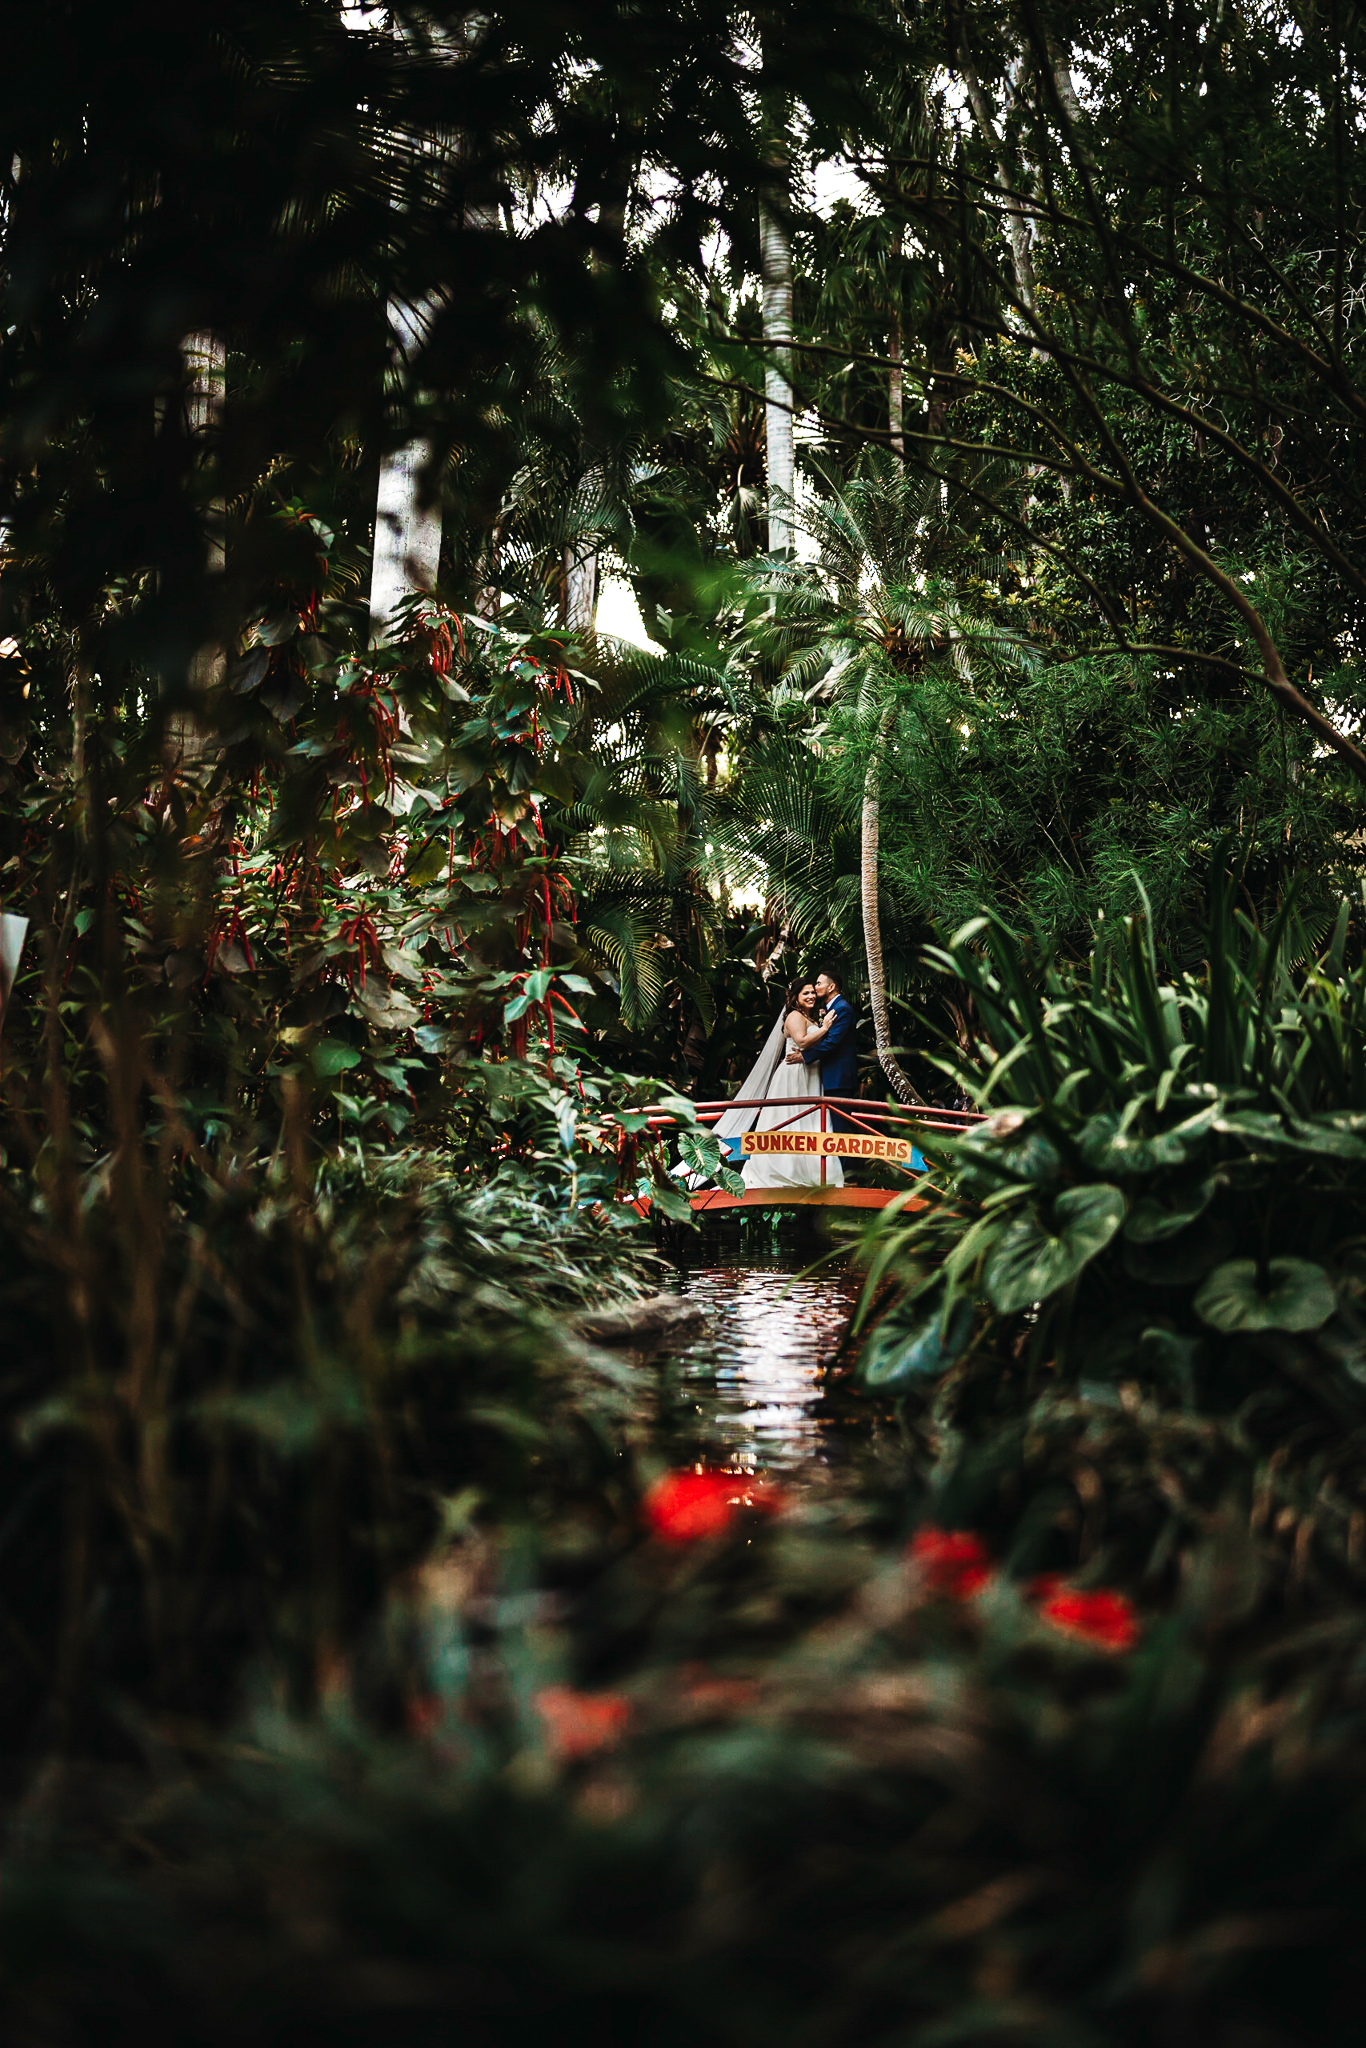 sunken gardens tropical oasis Saint Petersburg wedding photographer